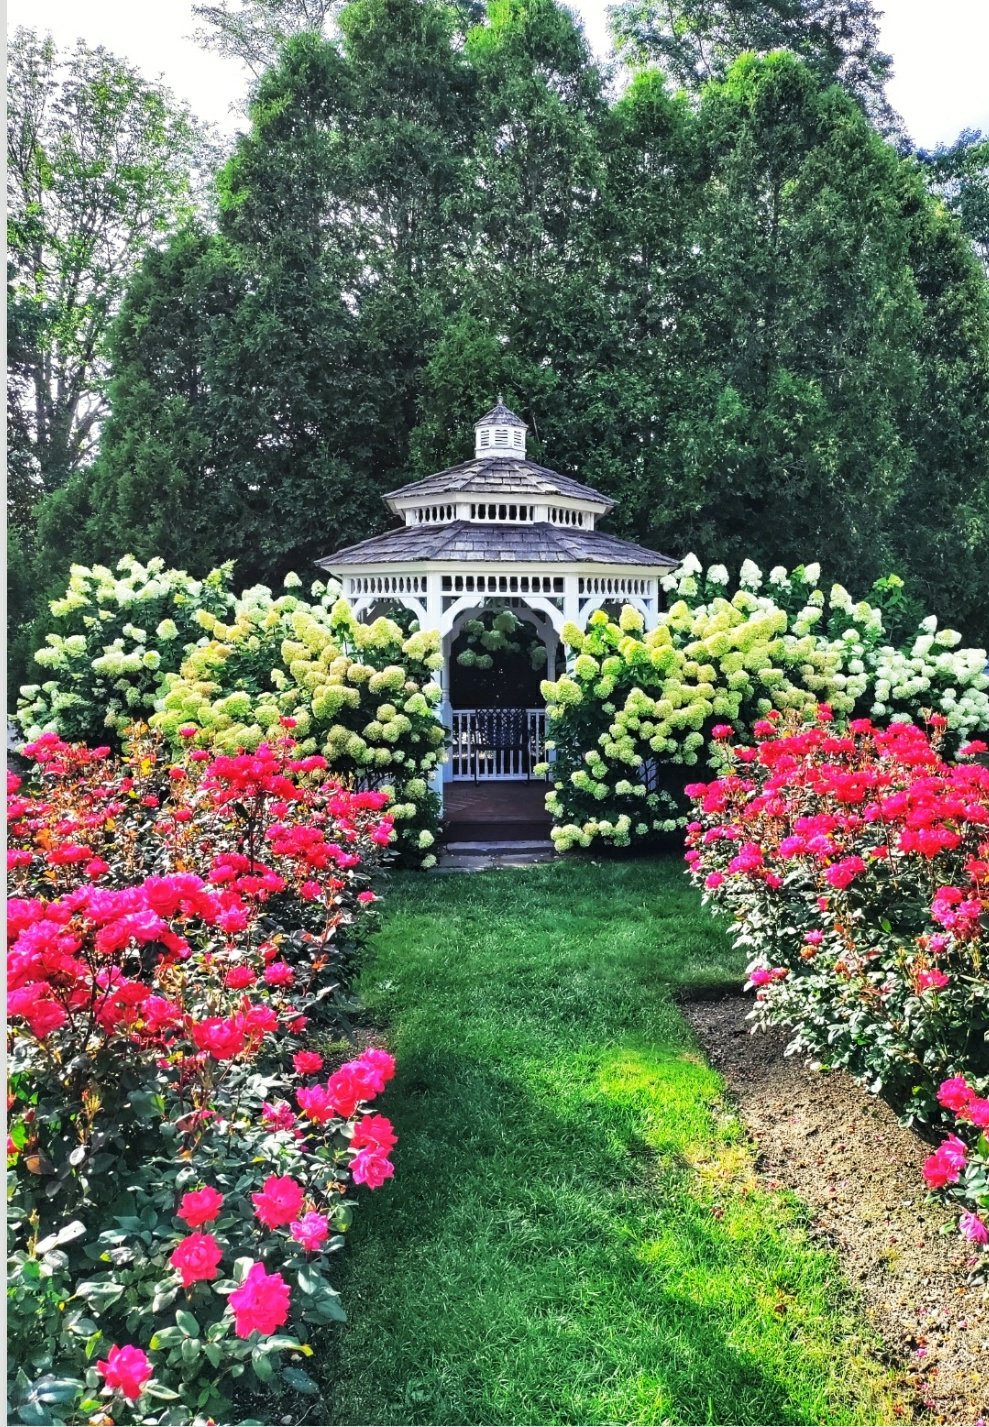 The rose garden and gazebo at York Harbor Inn, York, Maine